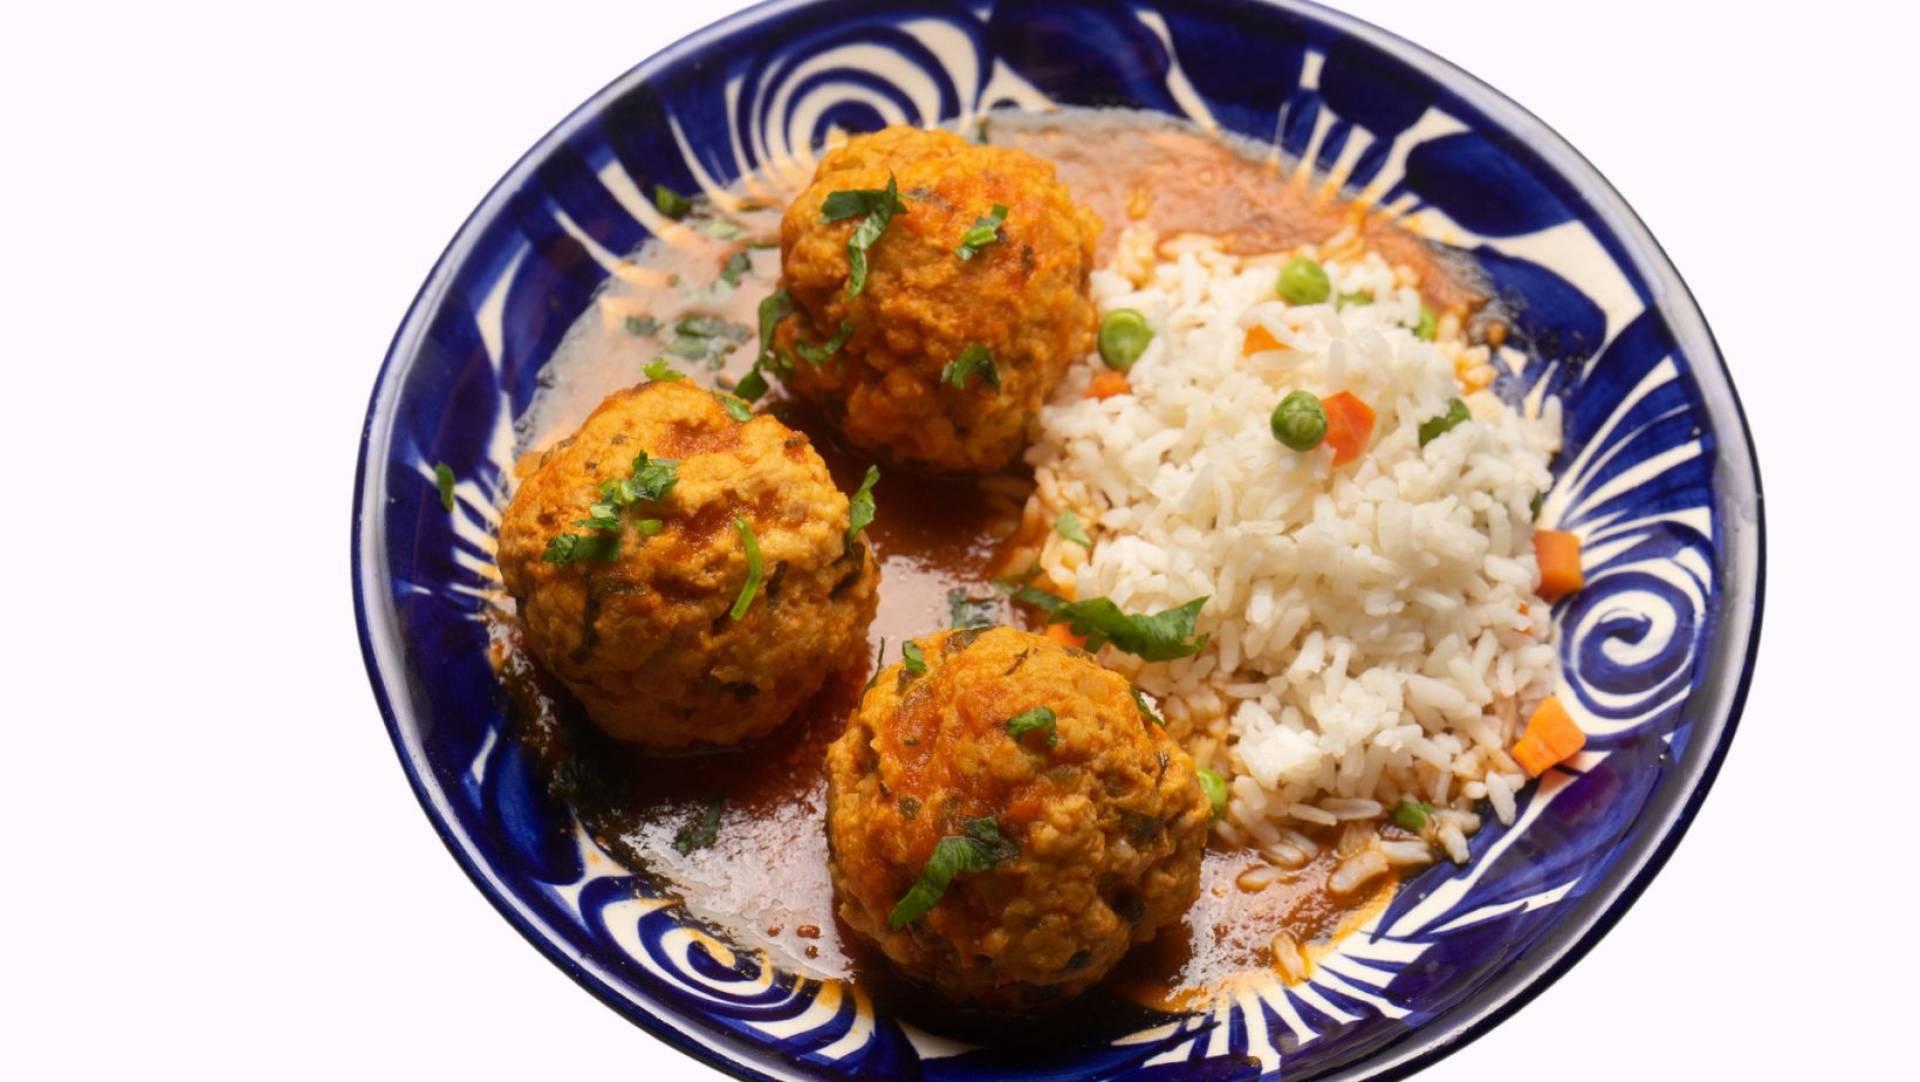 Tikka Masala Chicken Meatballs with Basmati Rice